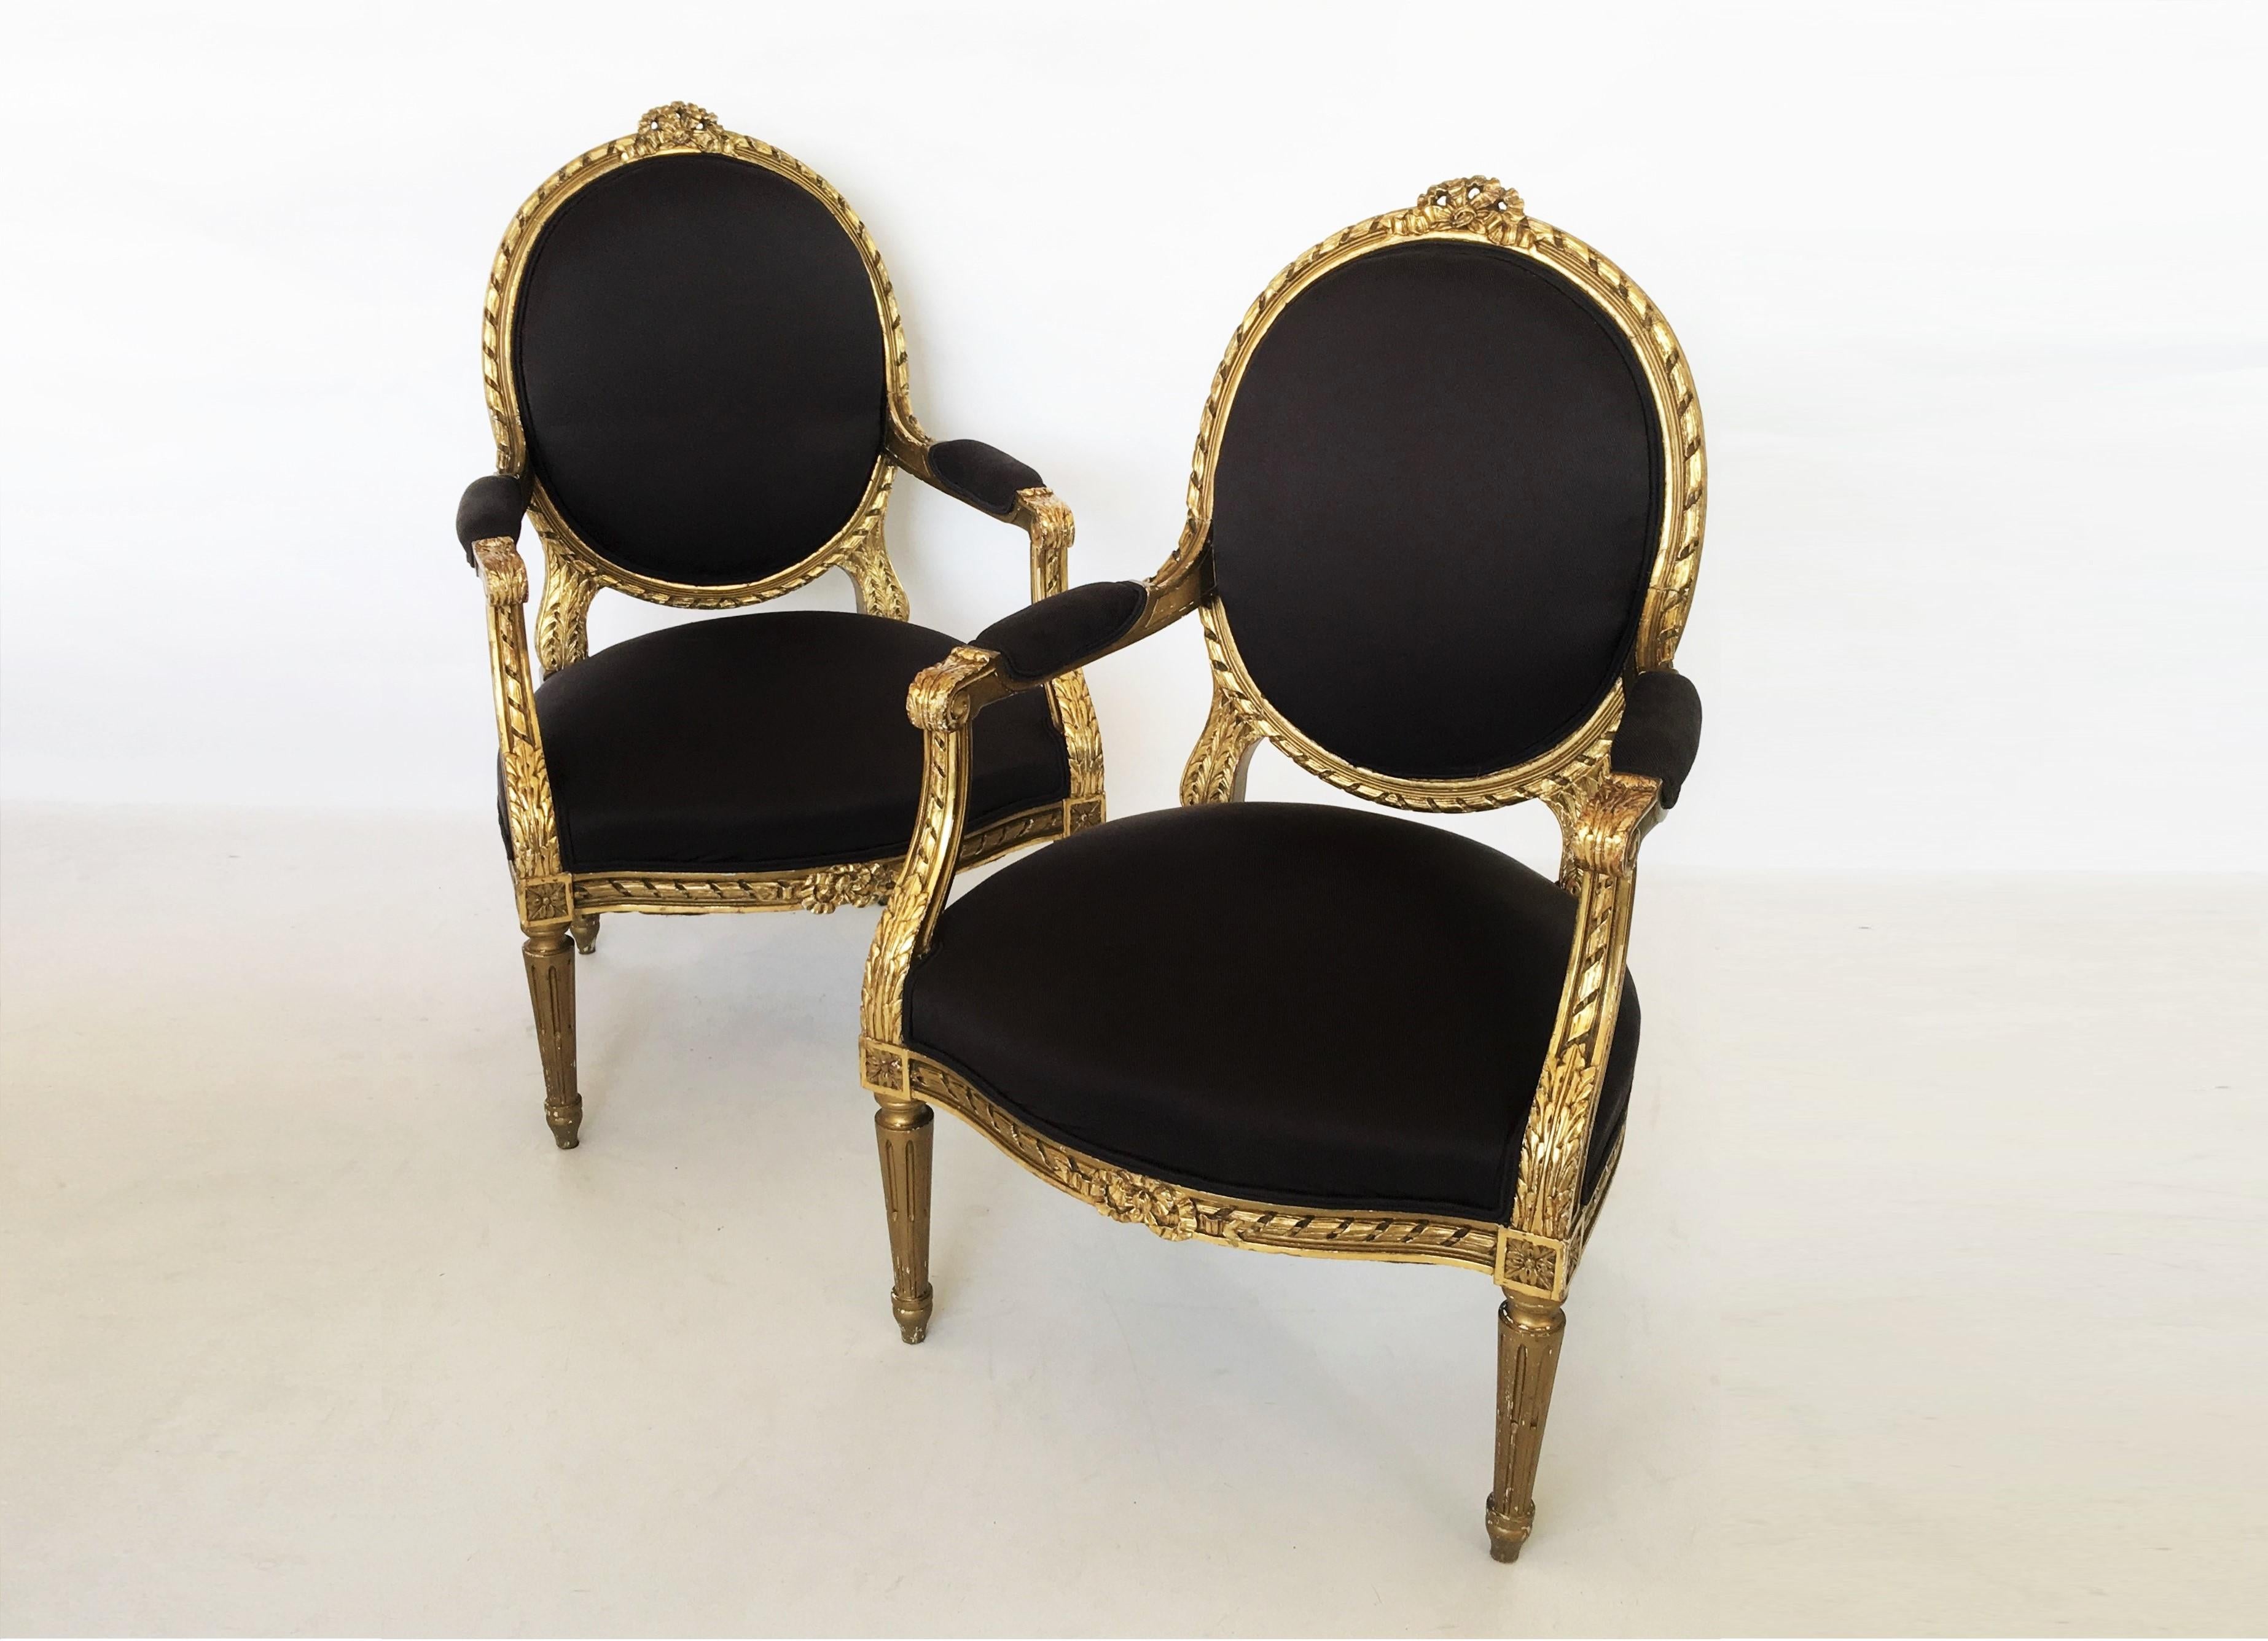 Ein prächtiges Paar offener Sessel aus vergoldetem Holz im Louis-XVI-Stil des 19. und 20. Jahrhunderts von außergewöhnlicher Qualität und Größe. Jeder der Sessel mit länglich-ovaler Rückenlehne, geschnitzter Rahmenbanderole und Knotenleiste ist